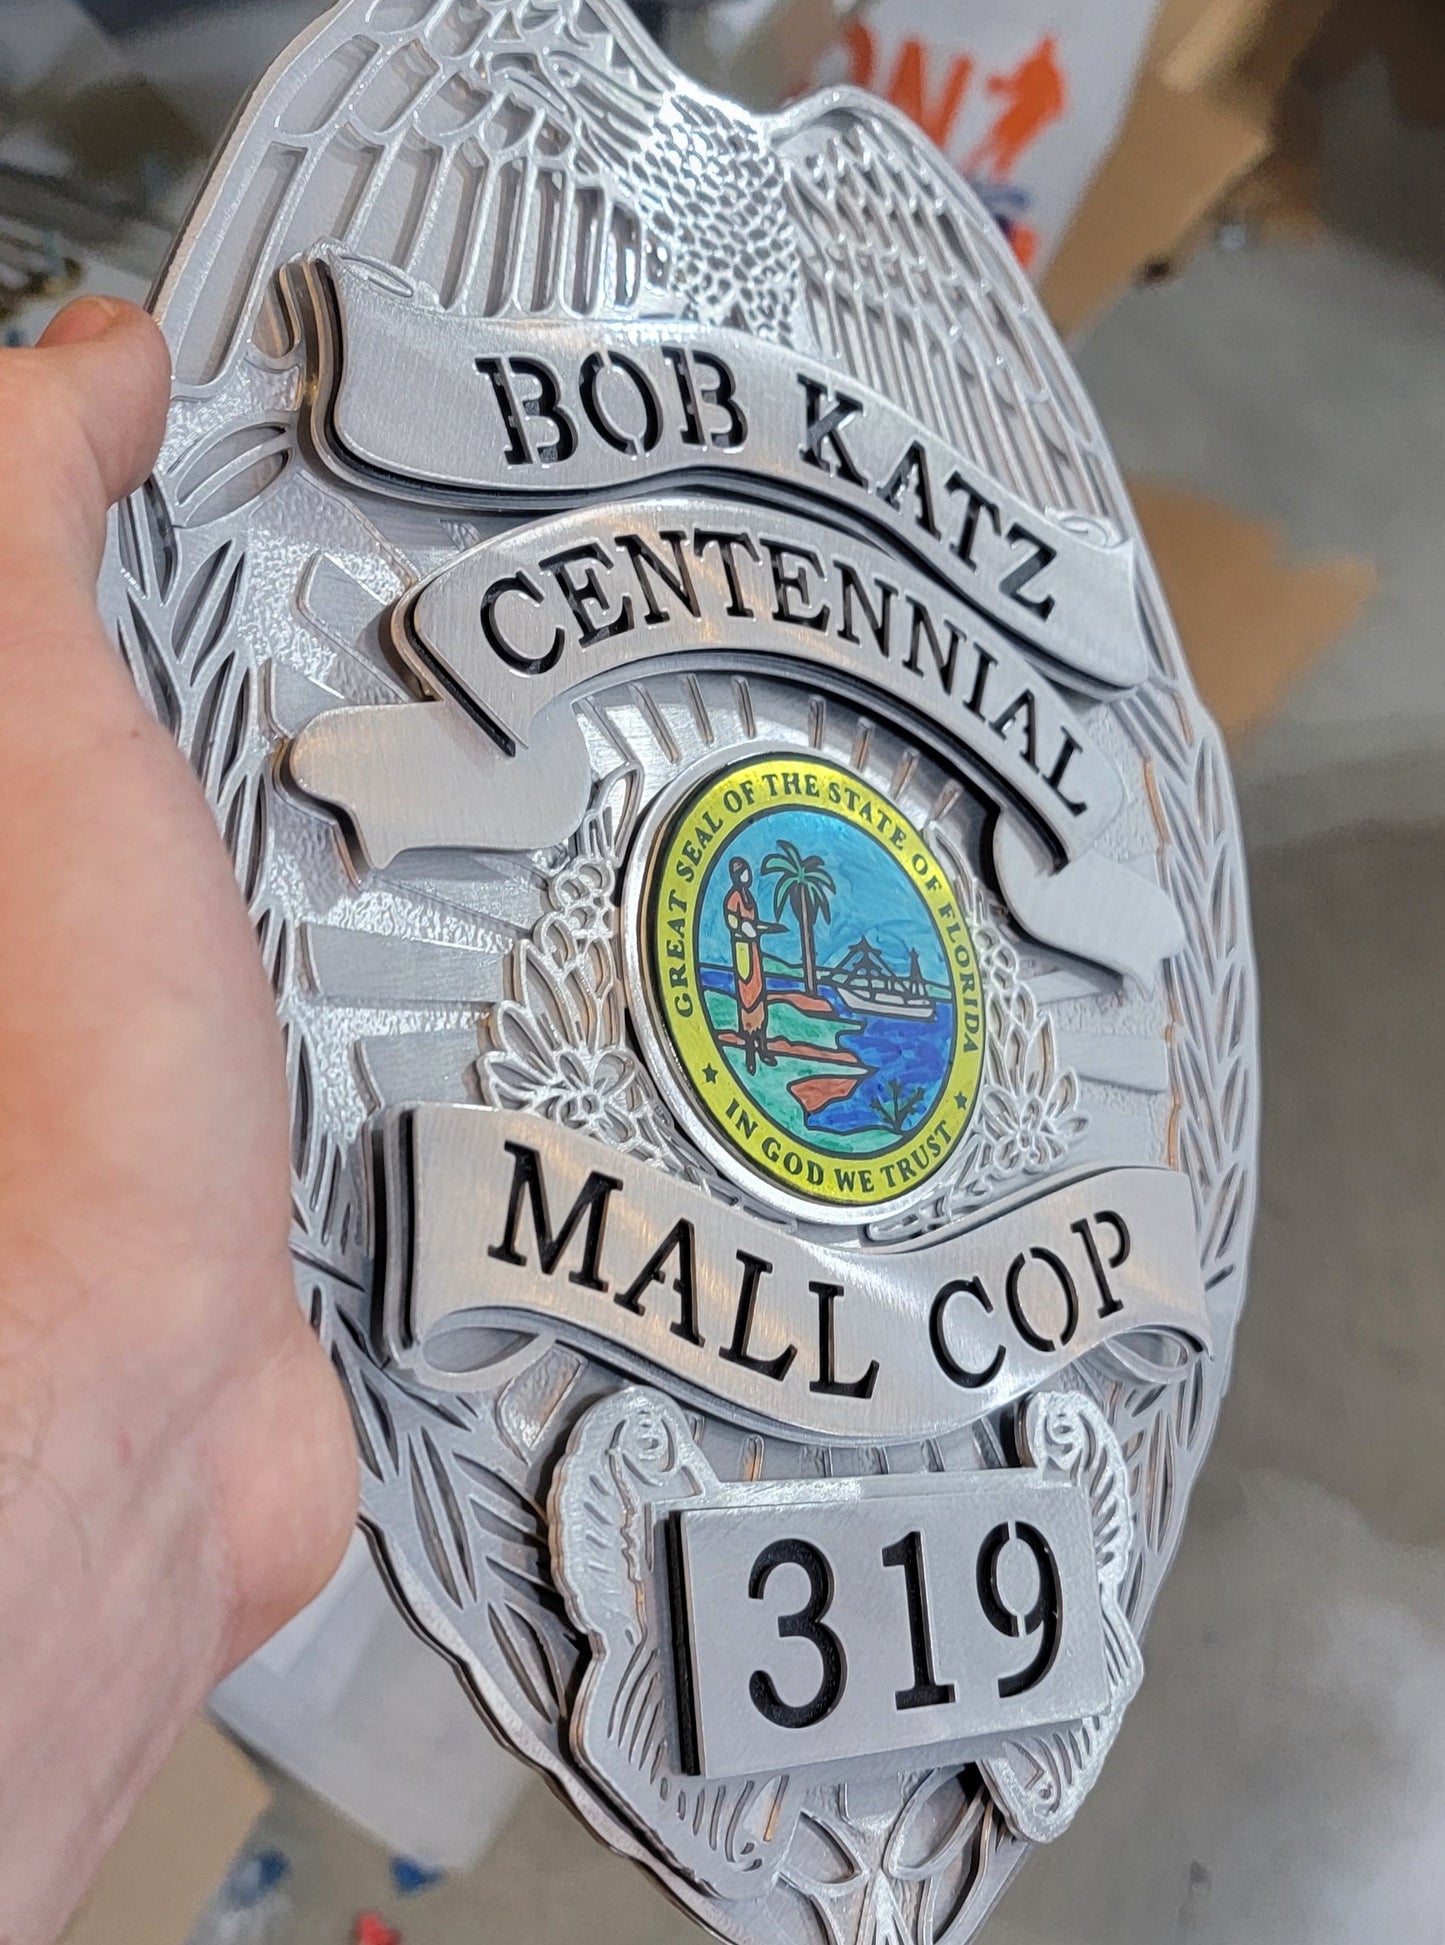 Centennial Mall Cop Badge